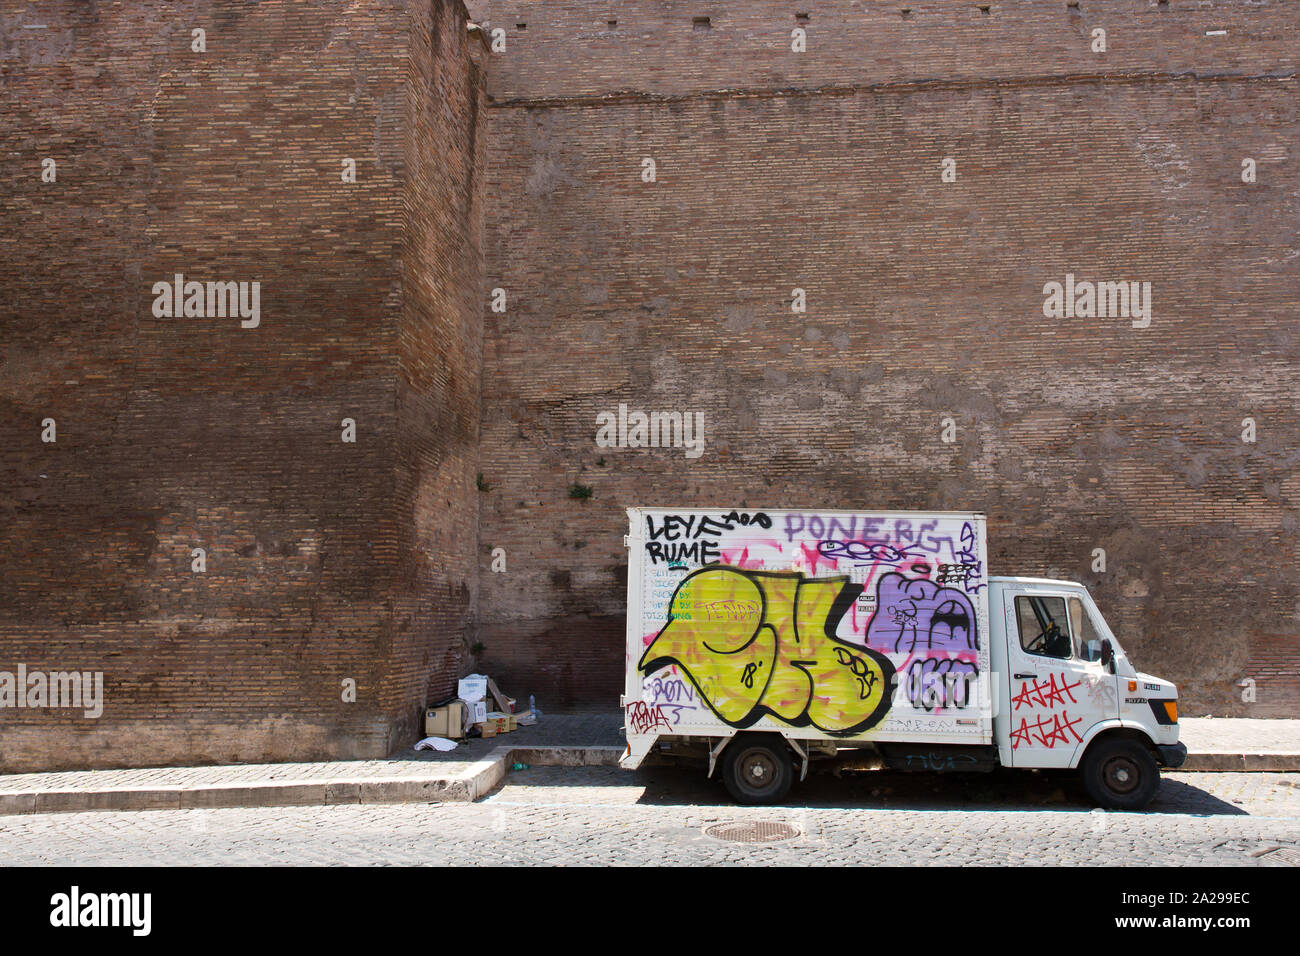 Roma - Consegna van spraypainted con grafitti davanti le vecchie mura della città Foto Stock